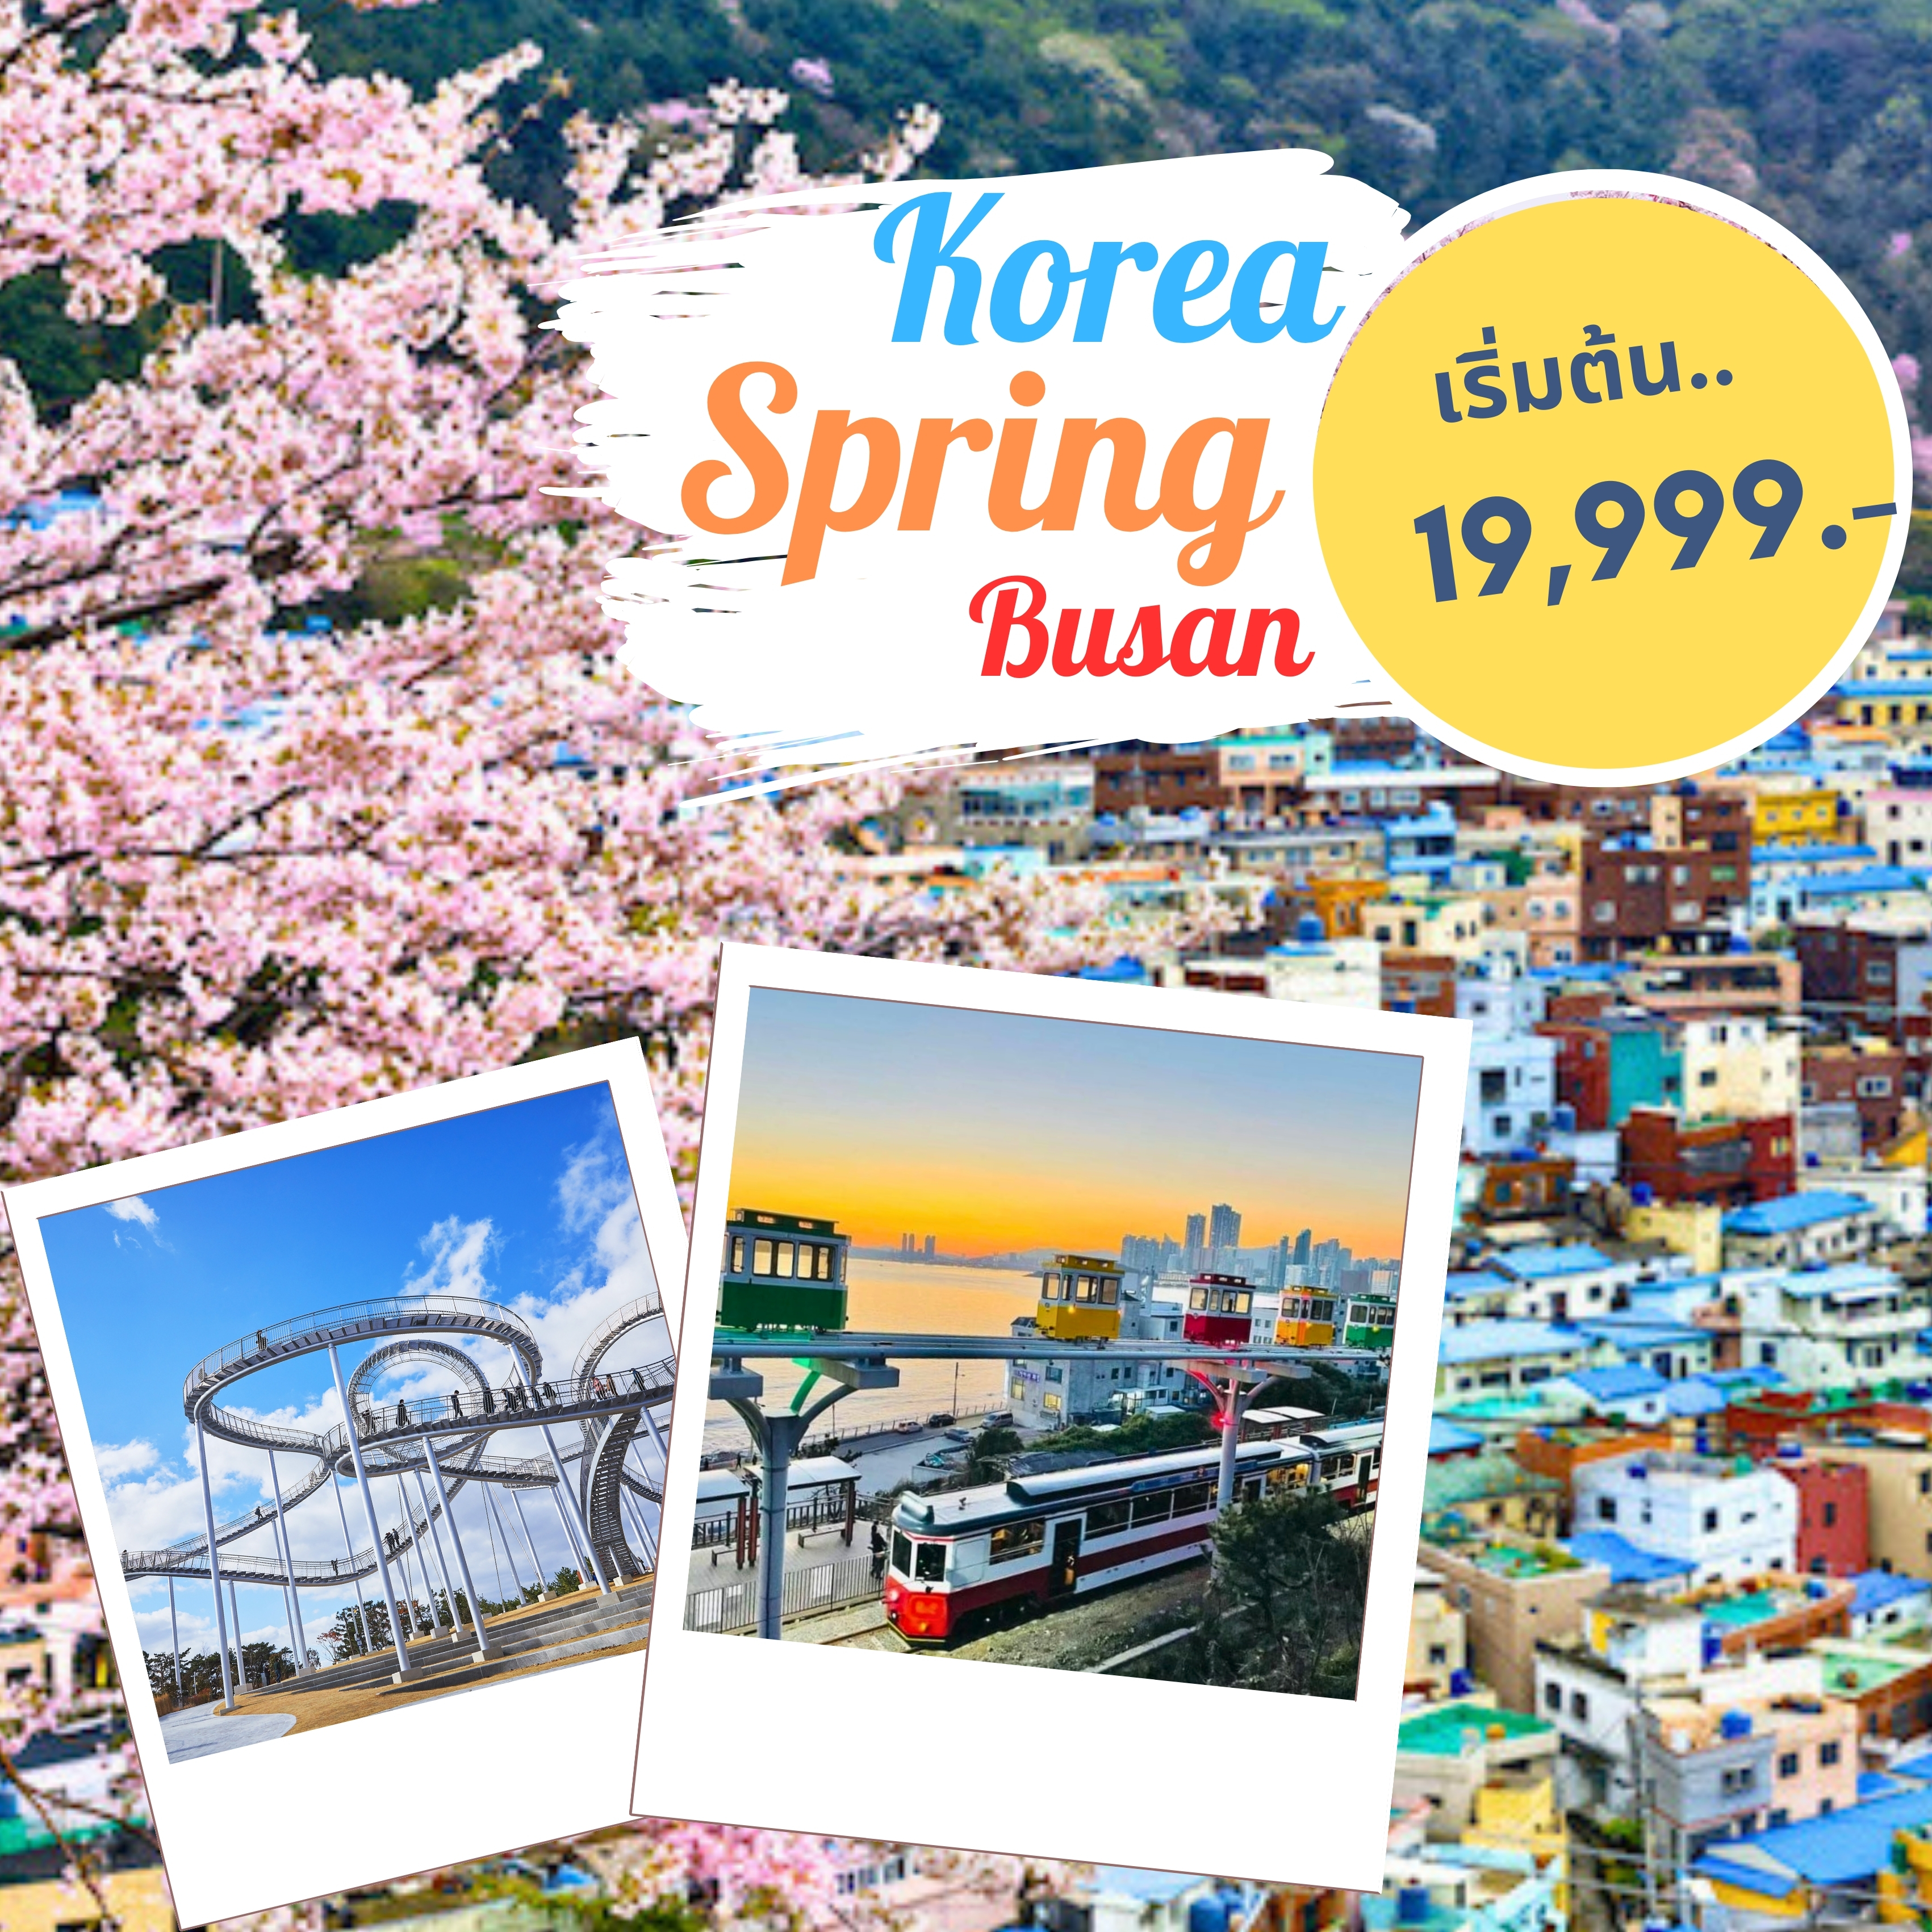 ทัวร์เกาหลี Korea Spring Busan เที่ยวเมืองสุดชิค 